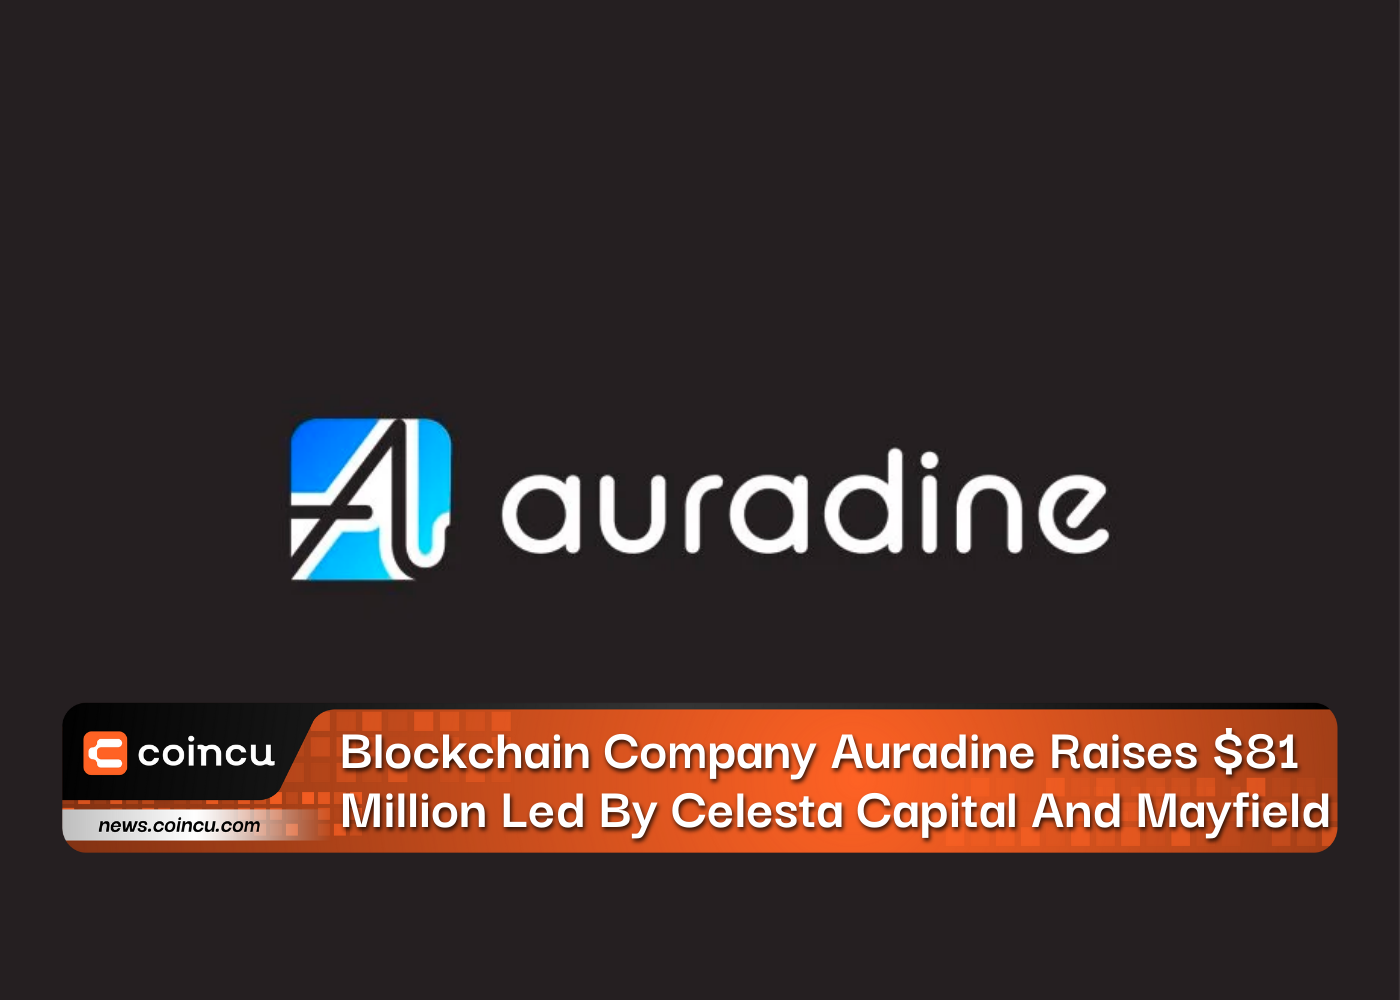 Blockchain Company Auradine Raises $81 Million Led By Celesta Capital And Mayfield